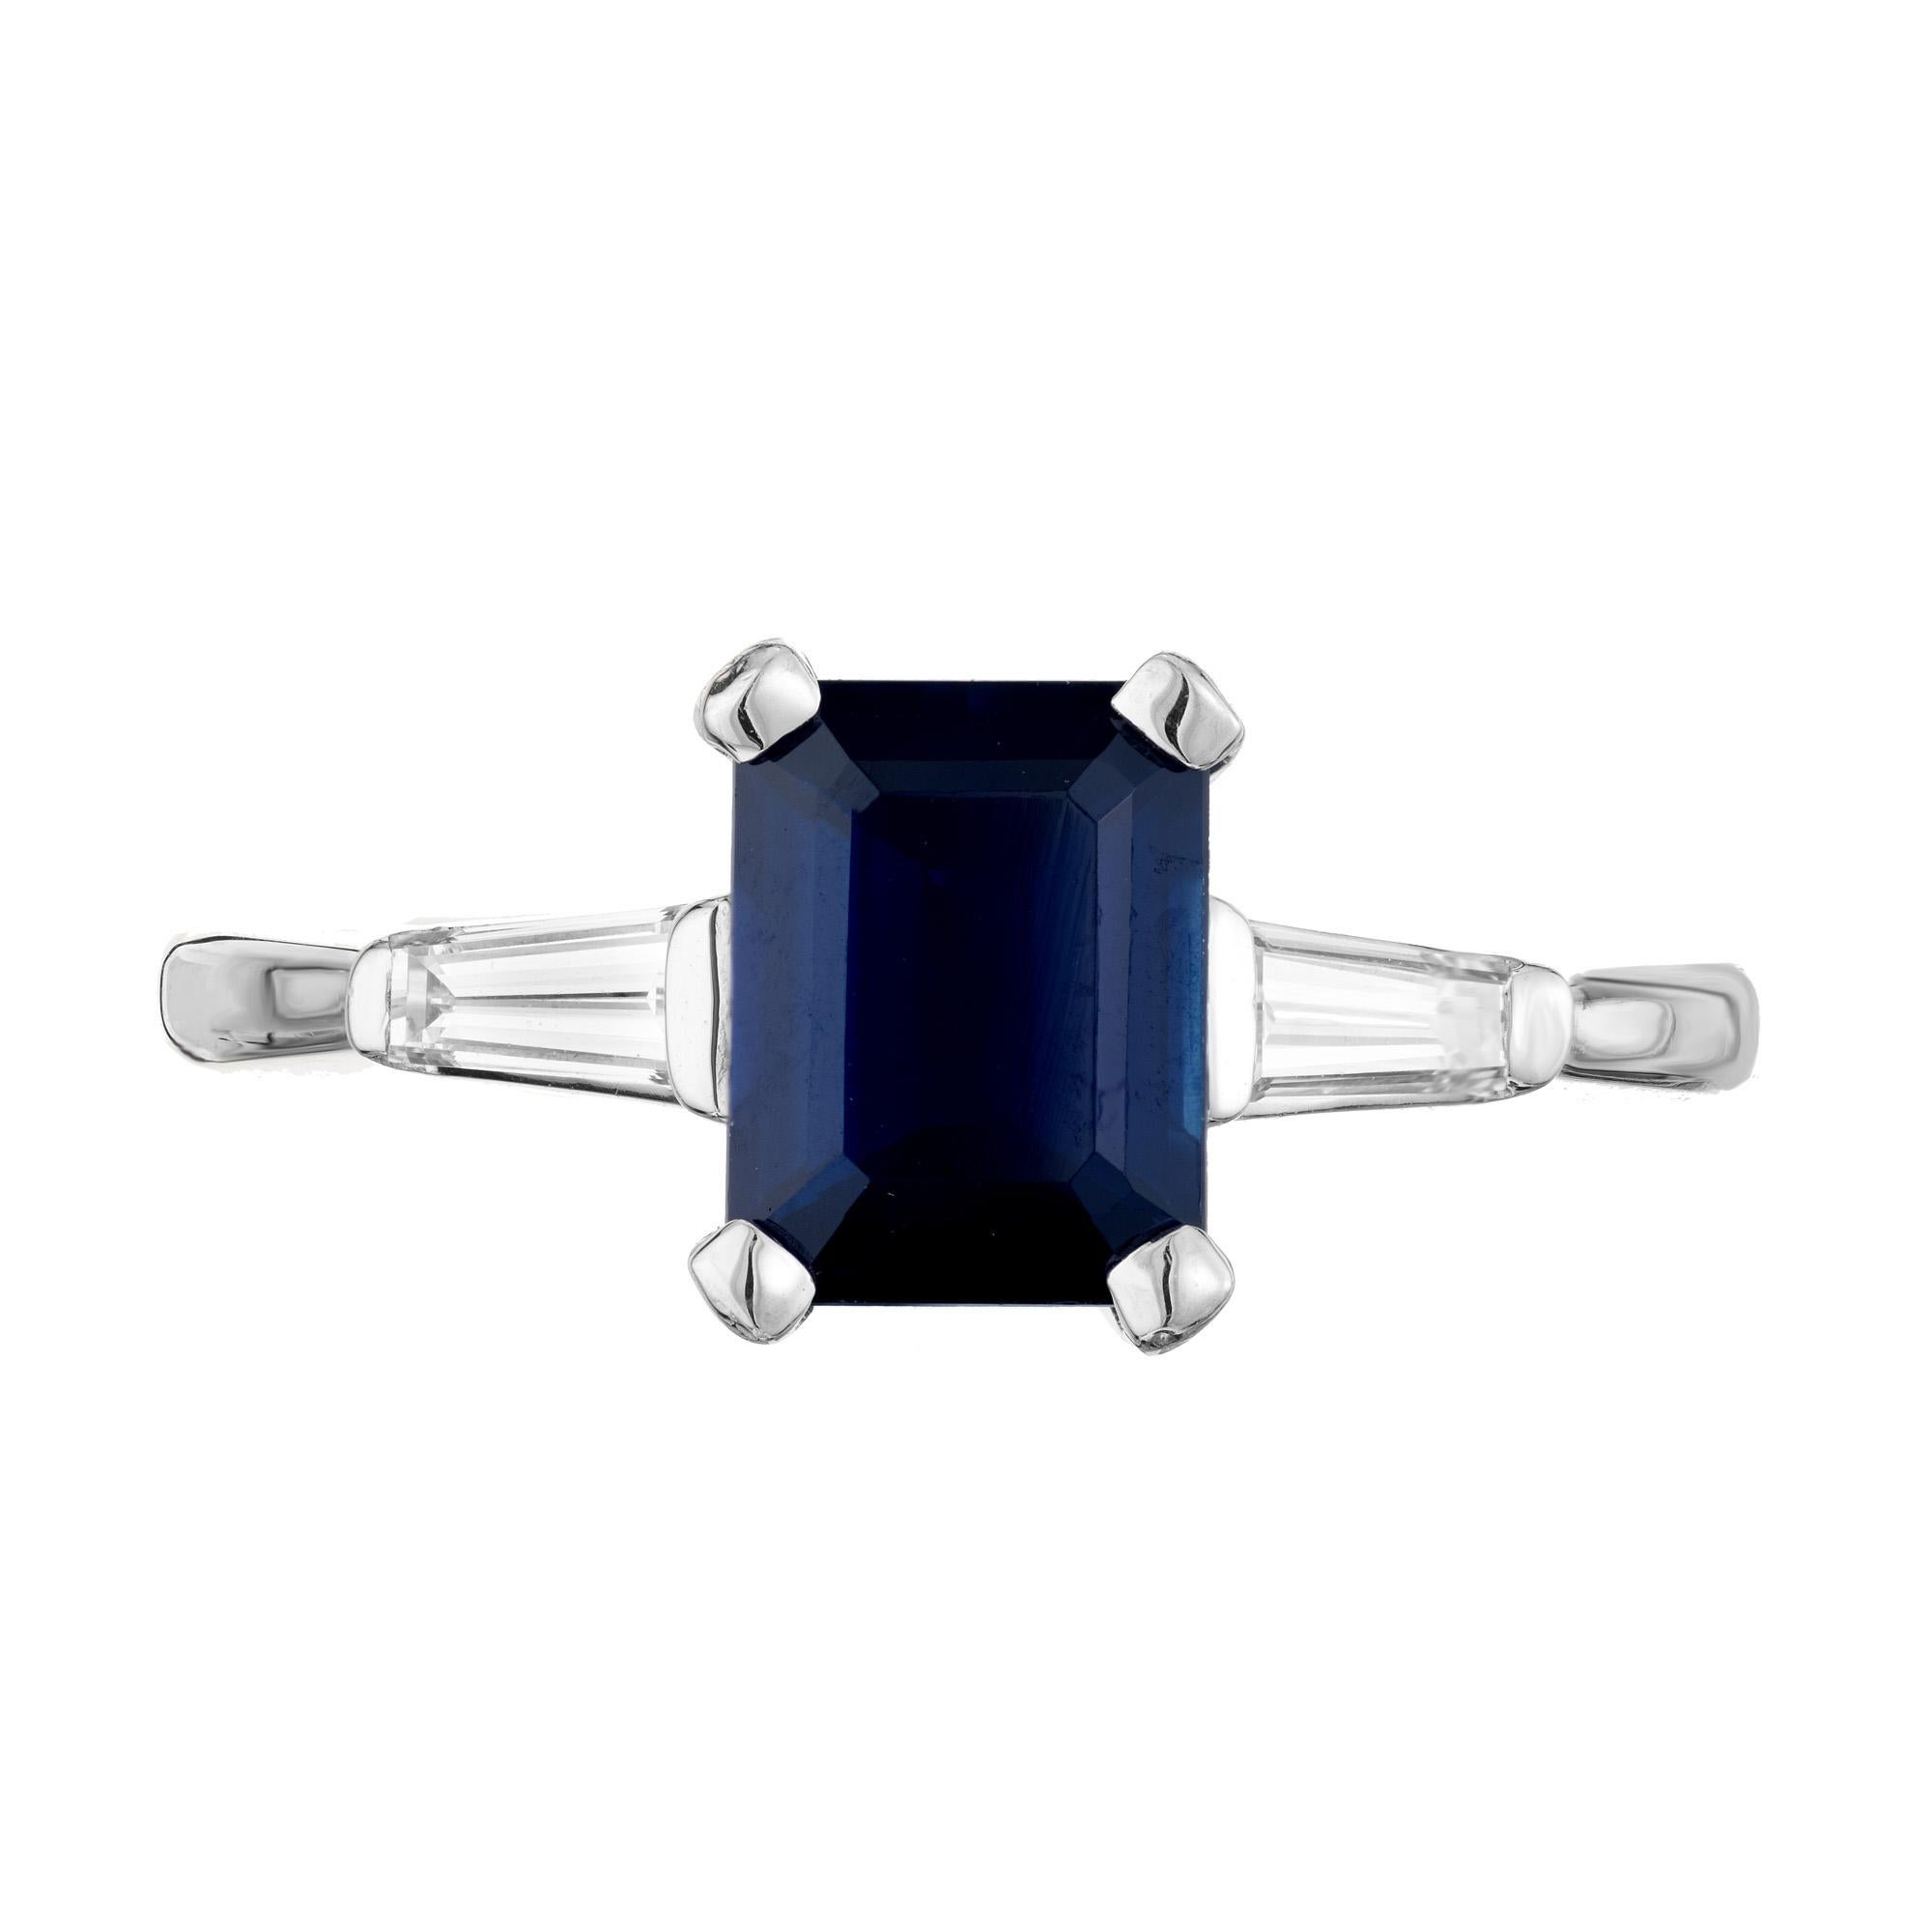 Bague de fiançailles en saphir et diamant. Saphir bleu octogonal de 1,80ct certifié par le GIA, monté dans une monture à trois pierres en platine. Accentué par deux diamants baguettes effilés sur le côté. Le saphir est certifié par le GIA comme